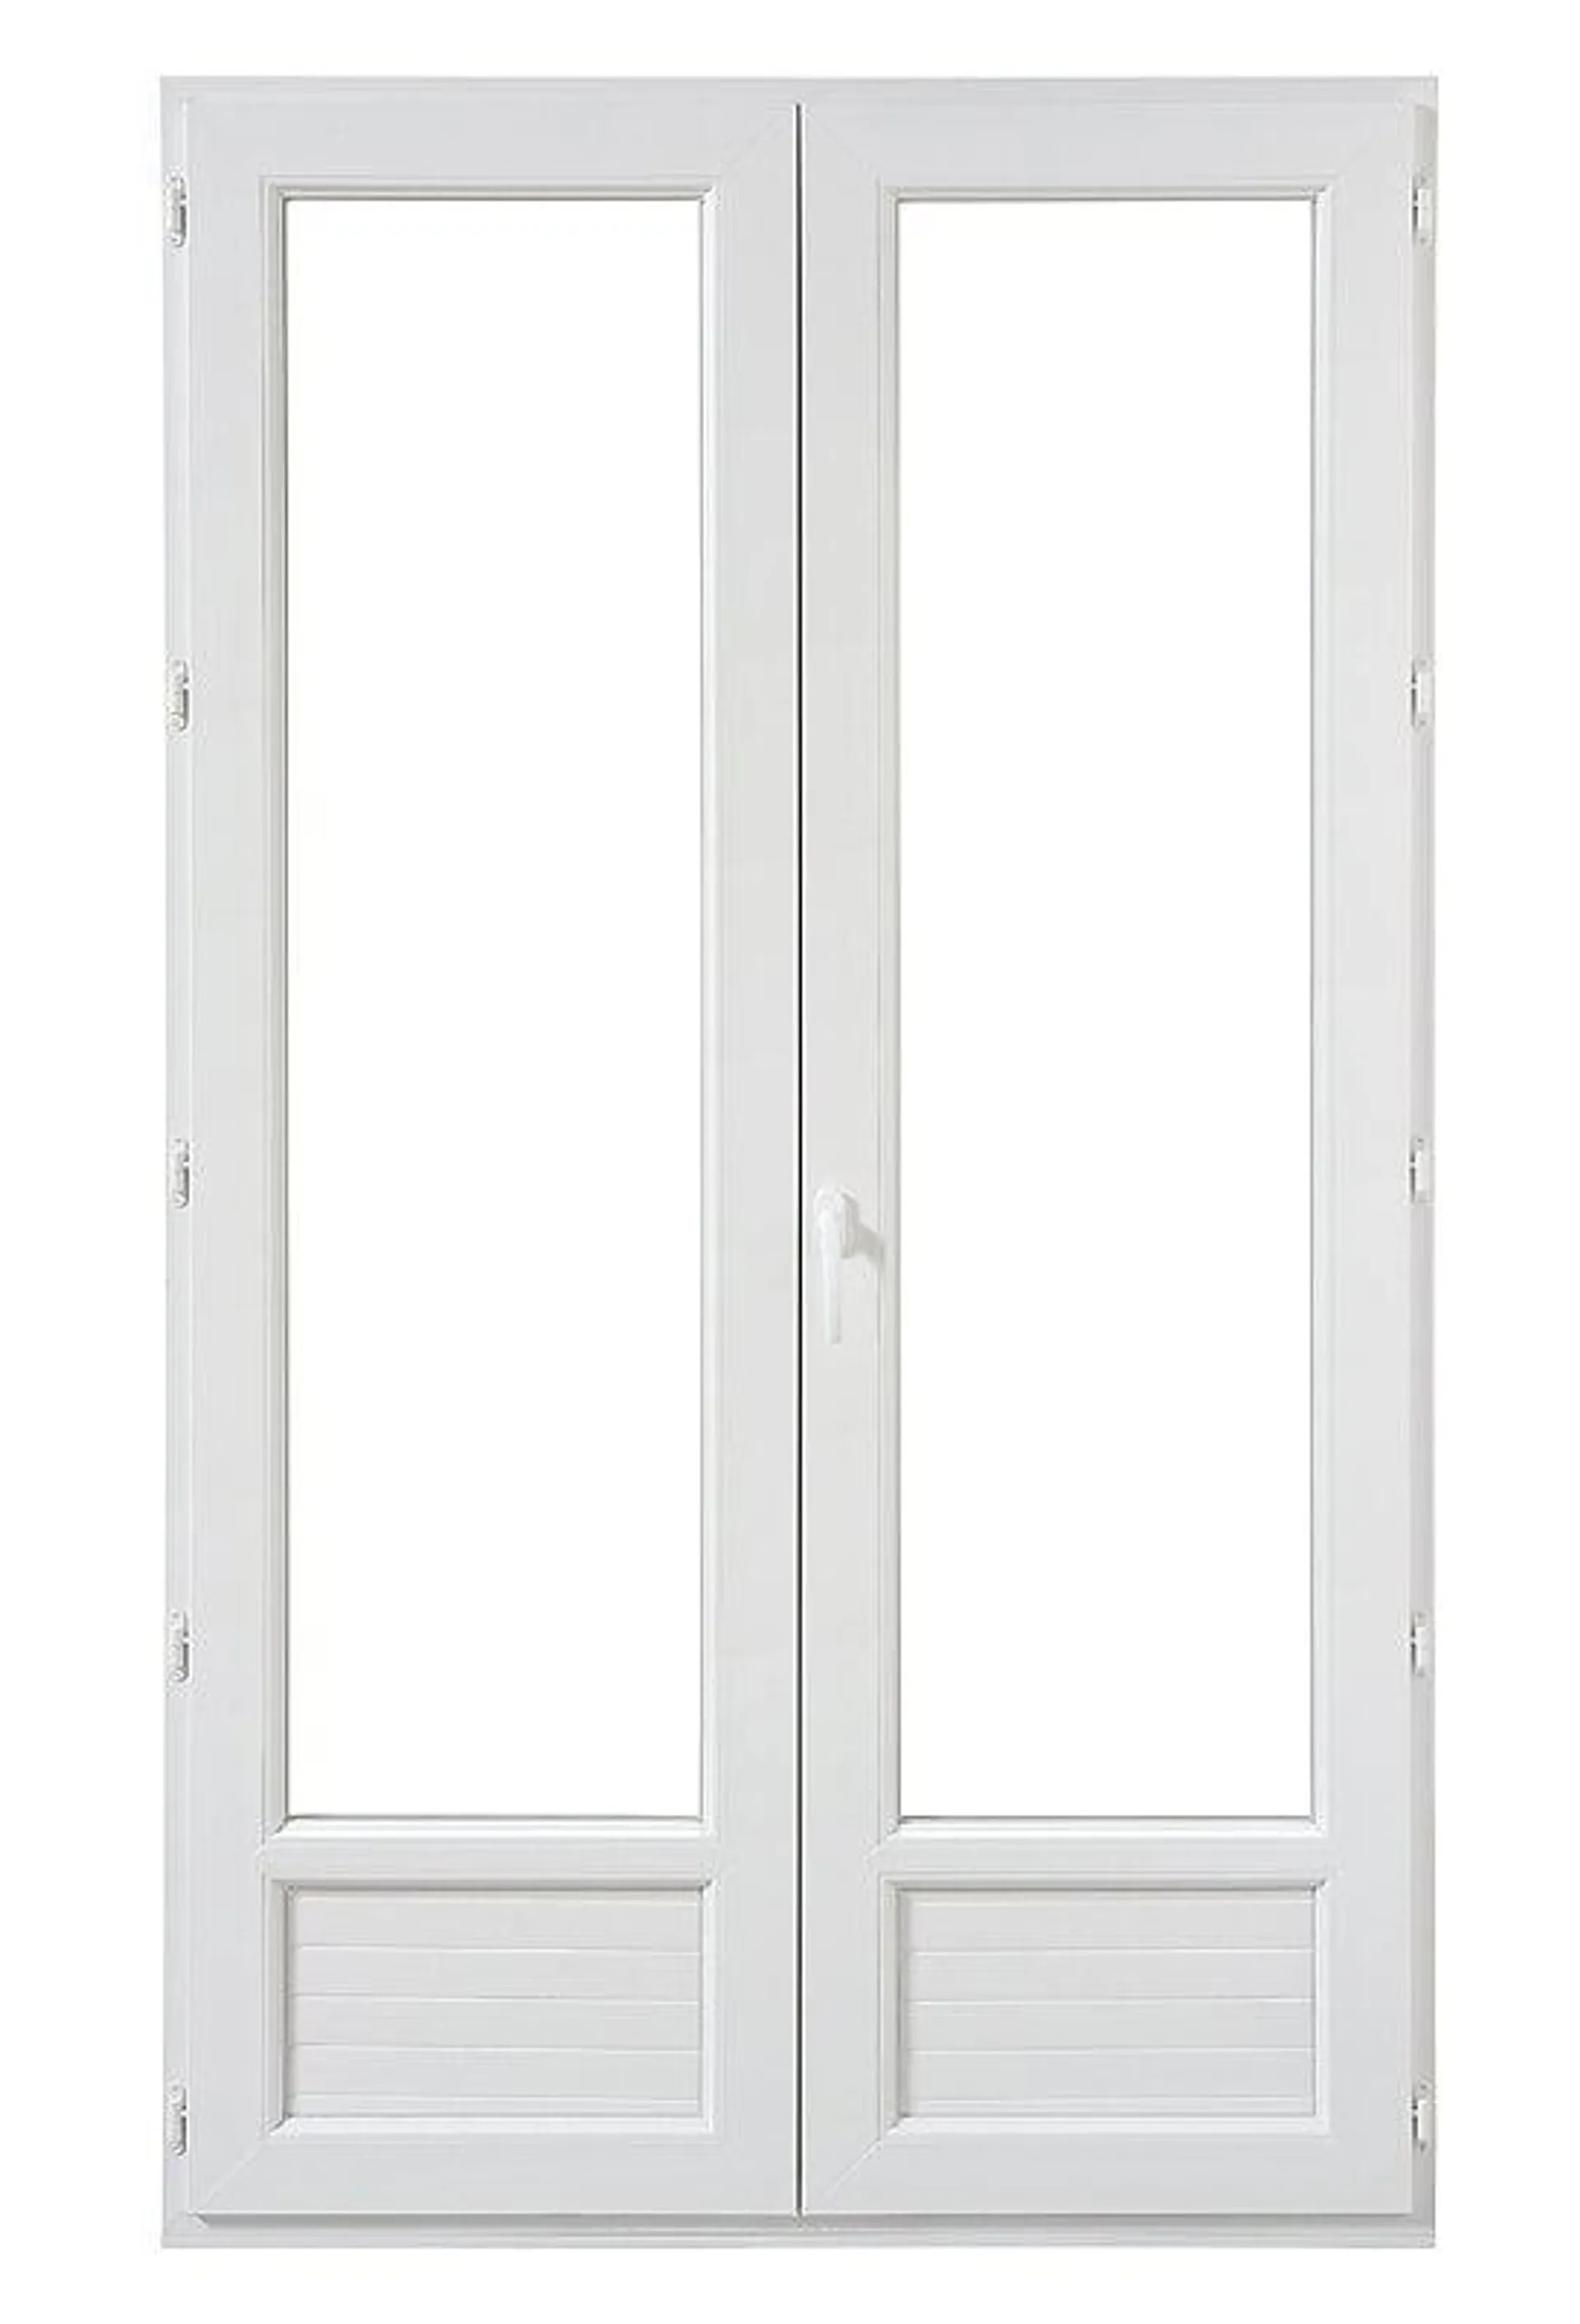 Porte-fenetre PVC 2 vantaux double vitrage tirant droit - 225x120cm